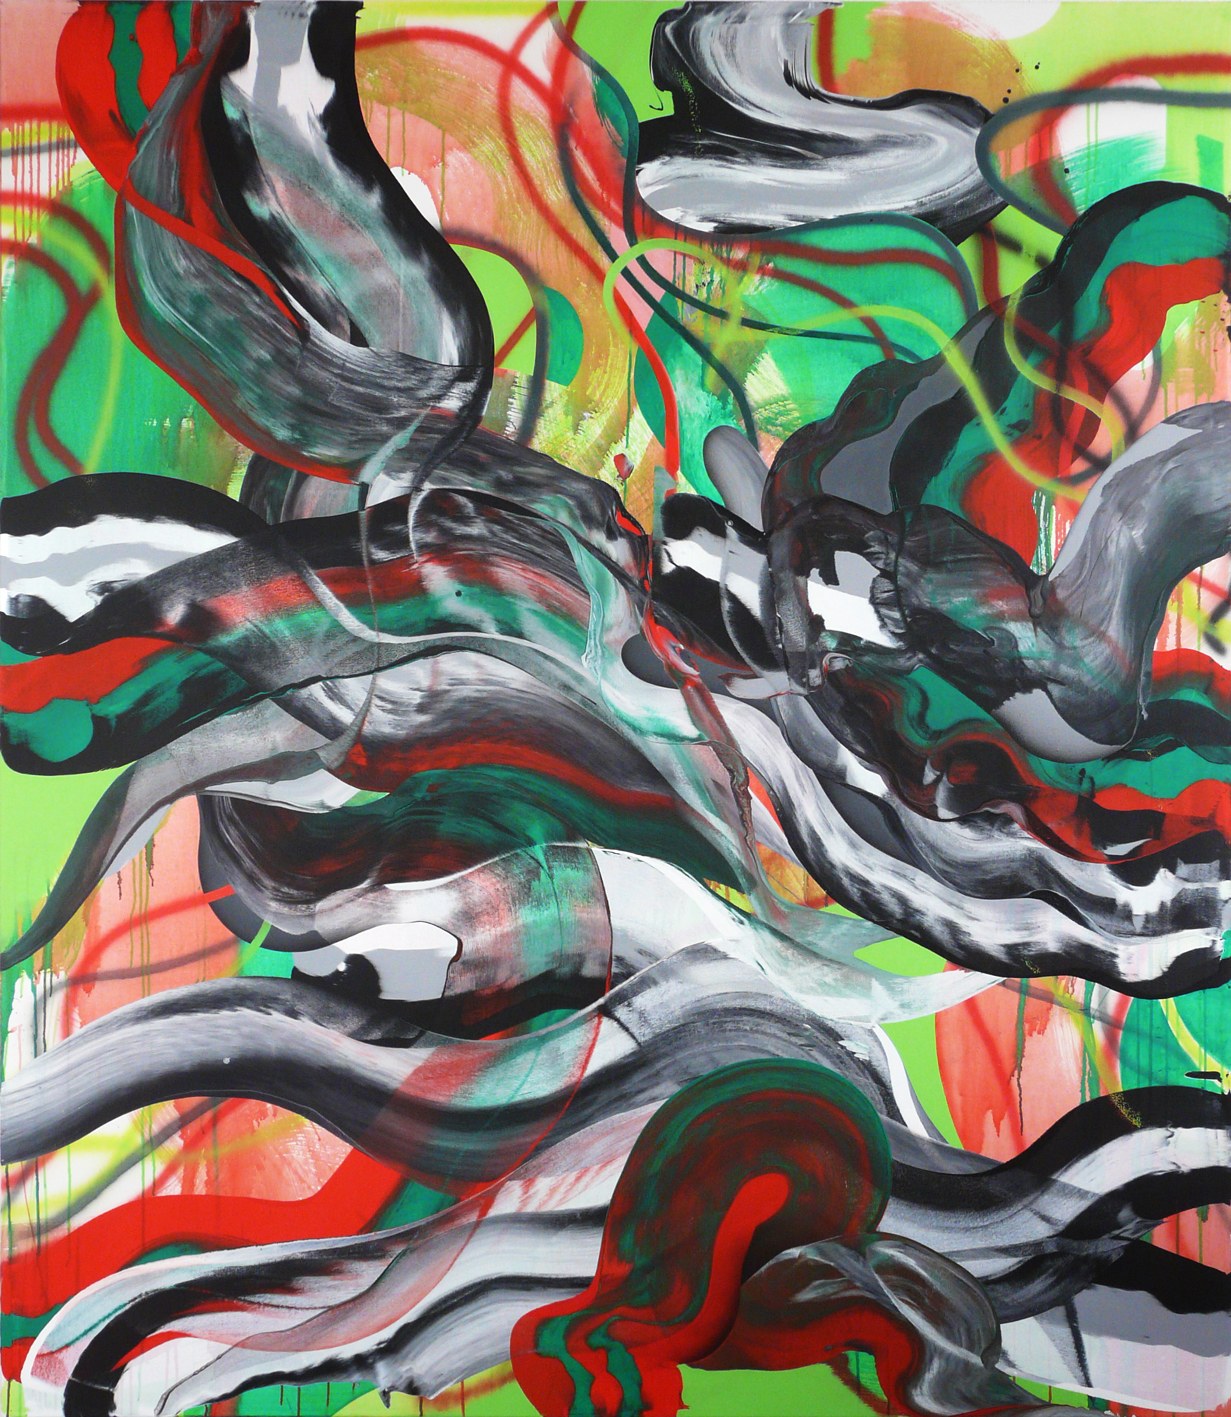 snakeoil#1, acryl on canvas, 230 x 200 cm